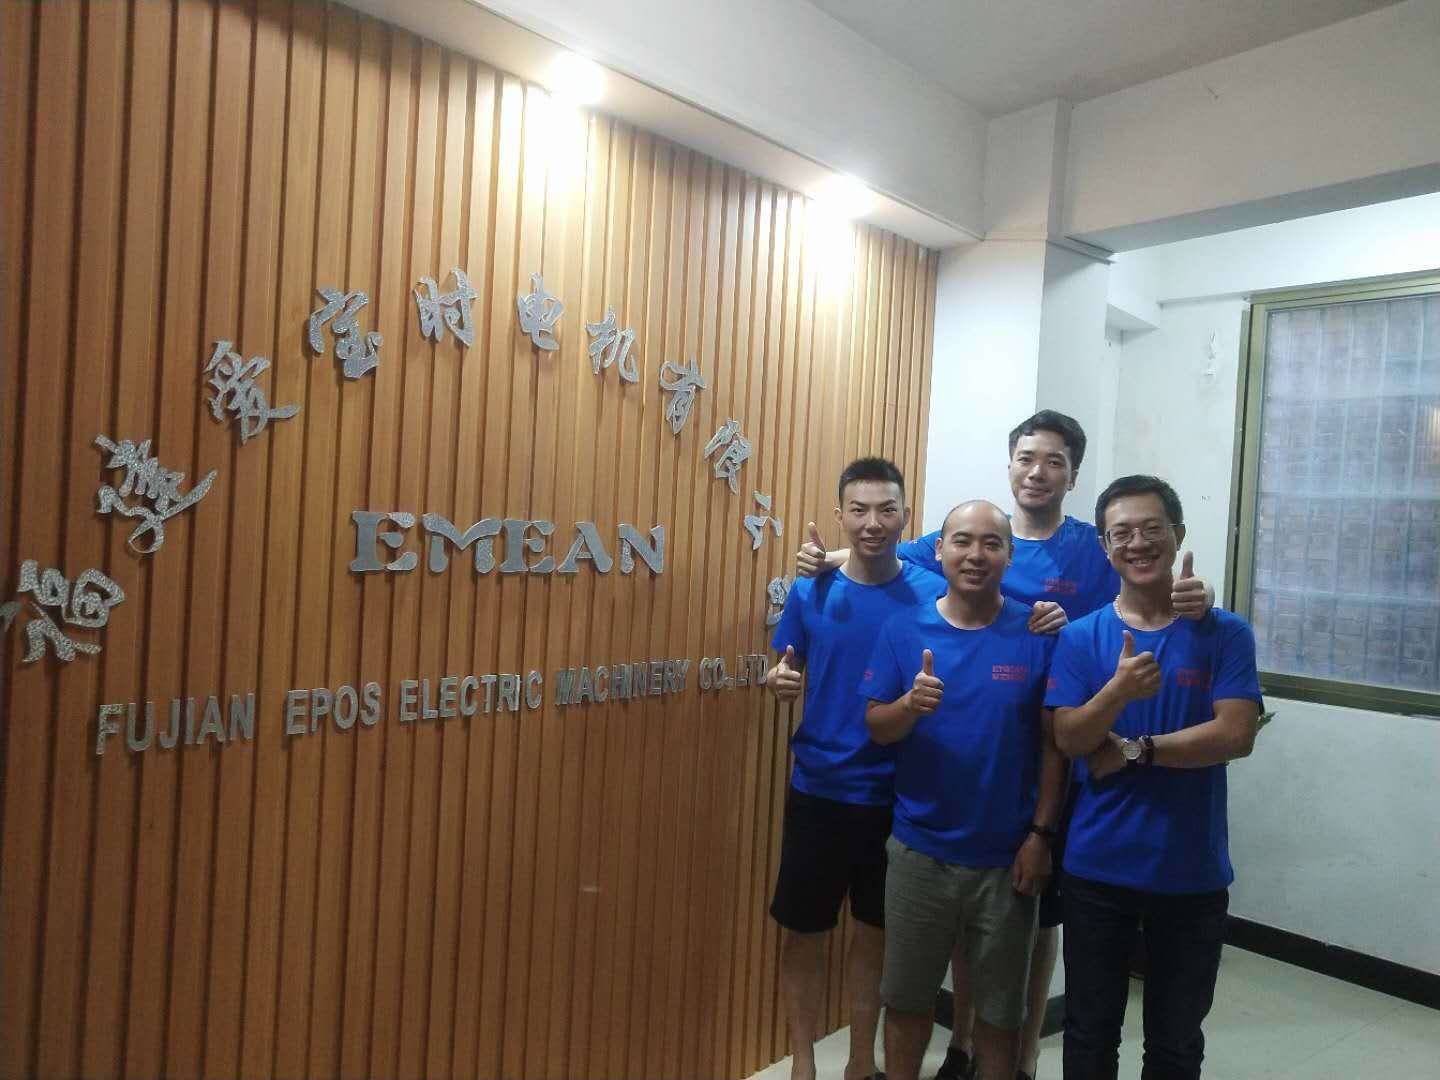 Fujian Epos Electric Machinery Co., Ltd